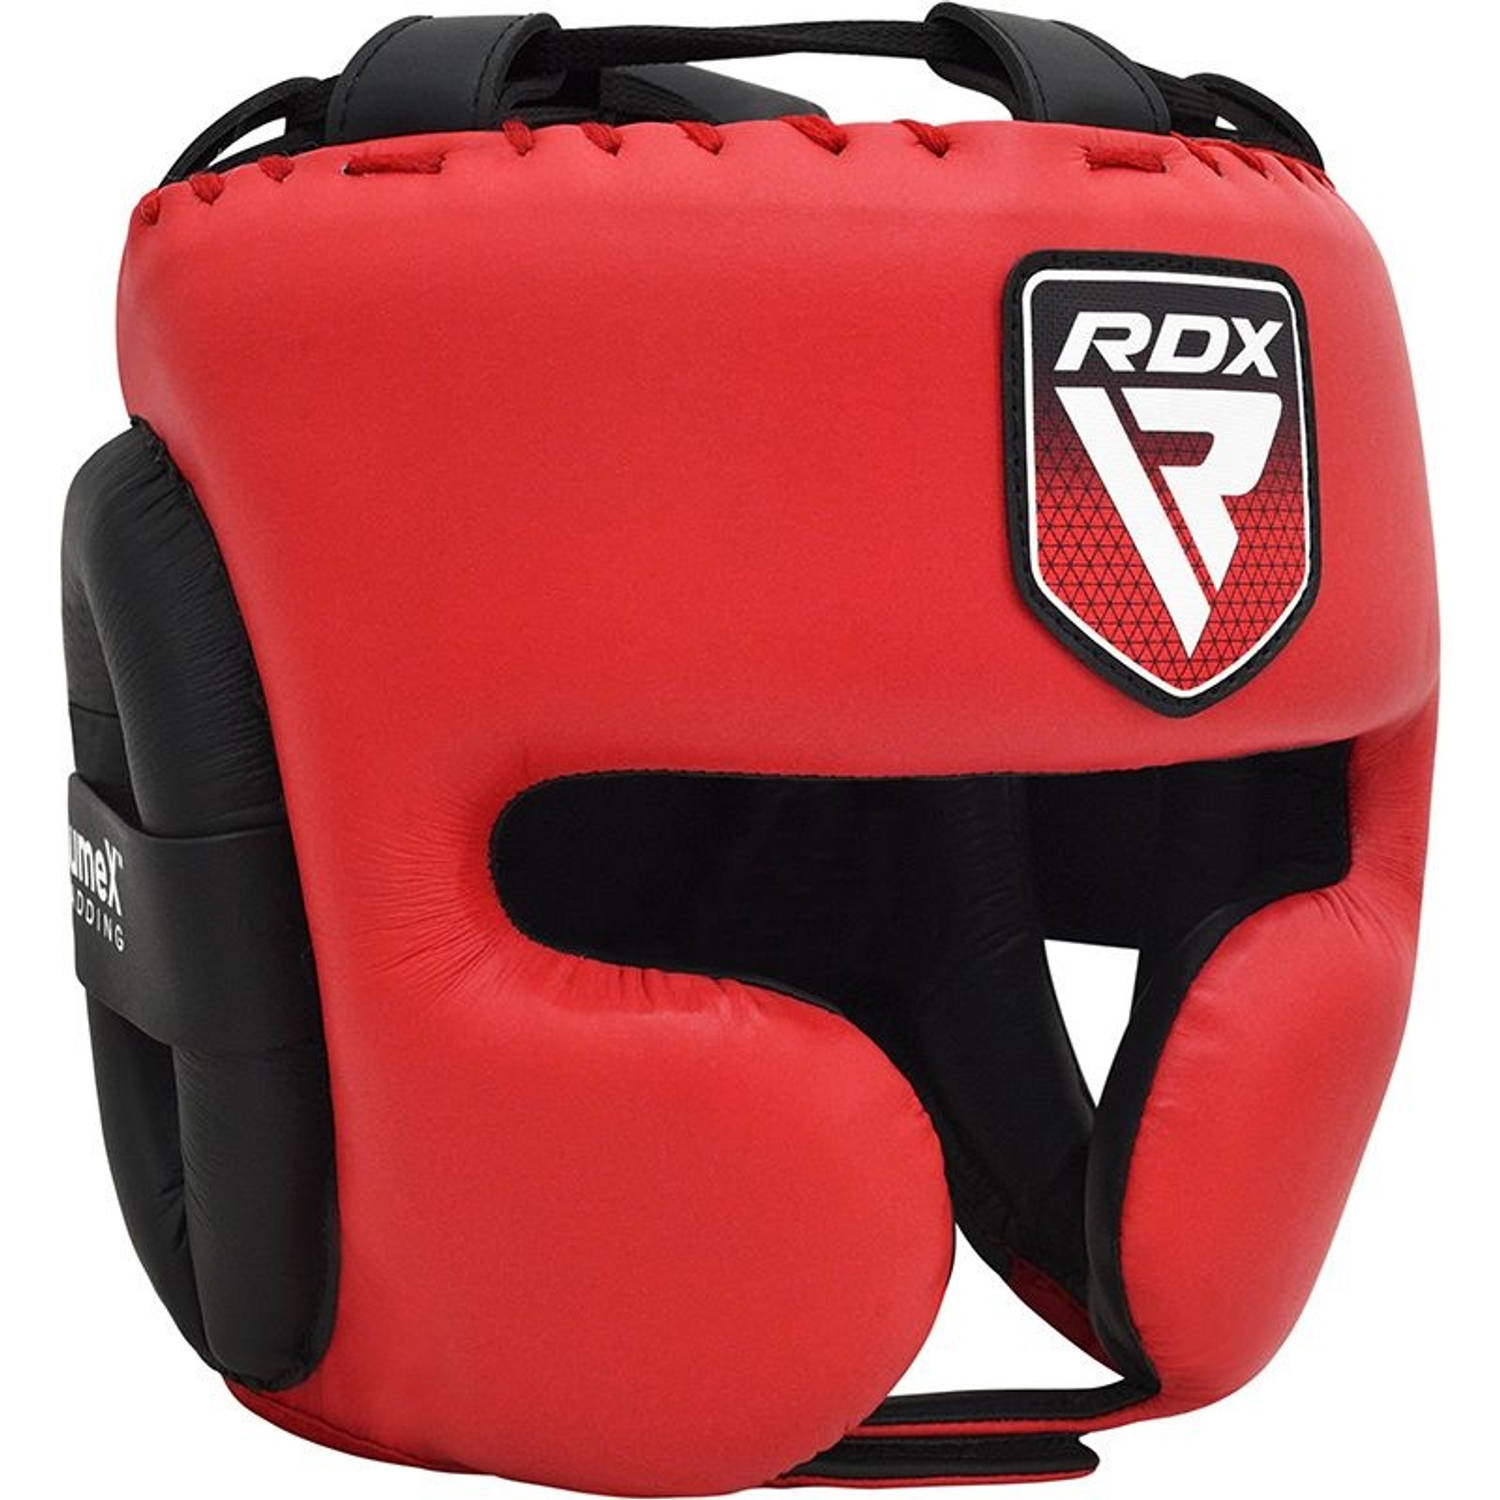 Rdx Sports Head Guard Pro Training Apex A4 - Blauw - S - Foam, Skin Leather